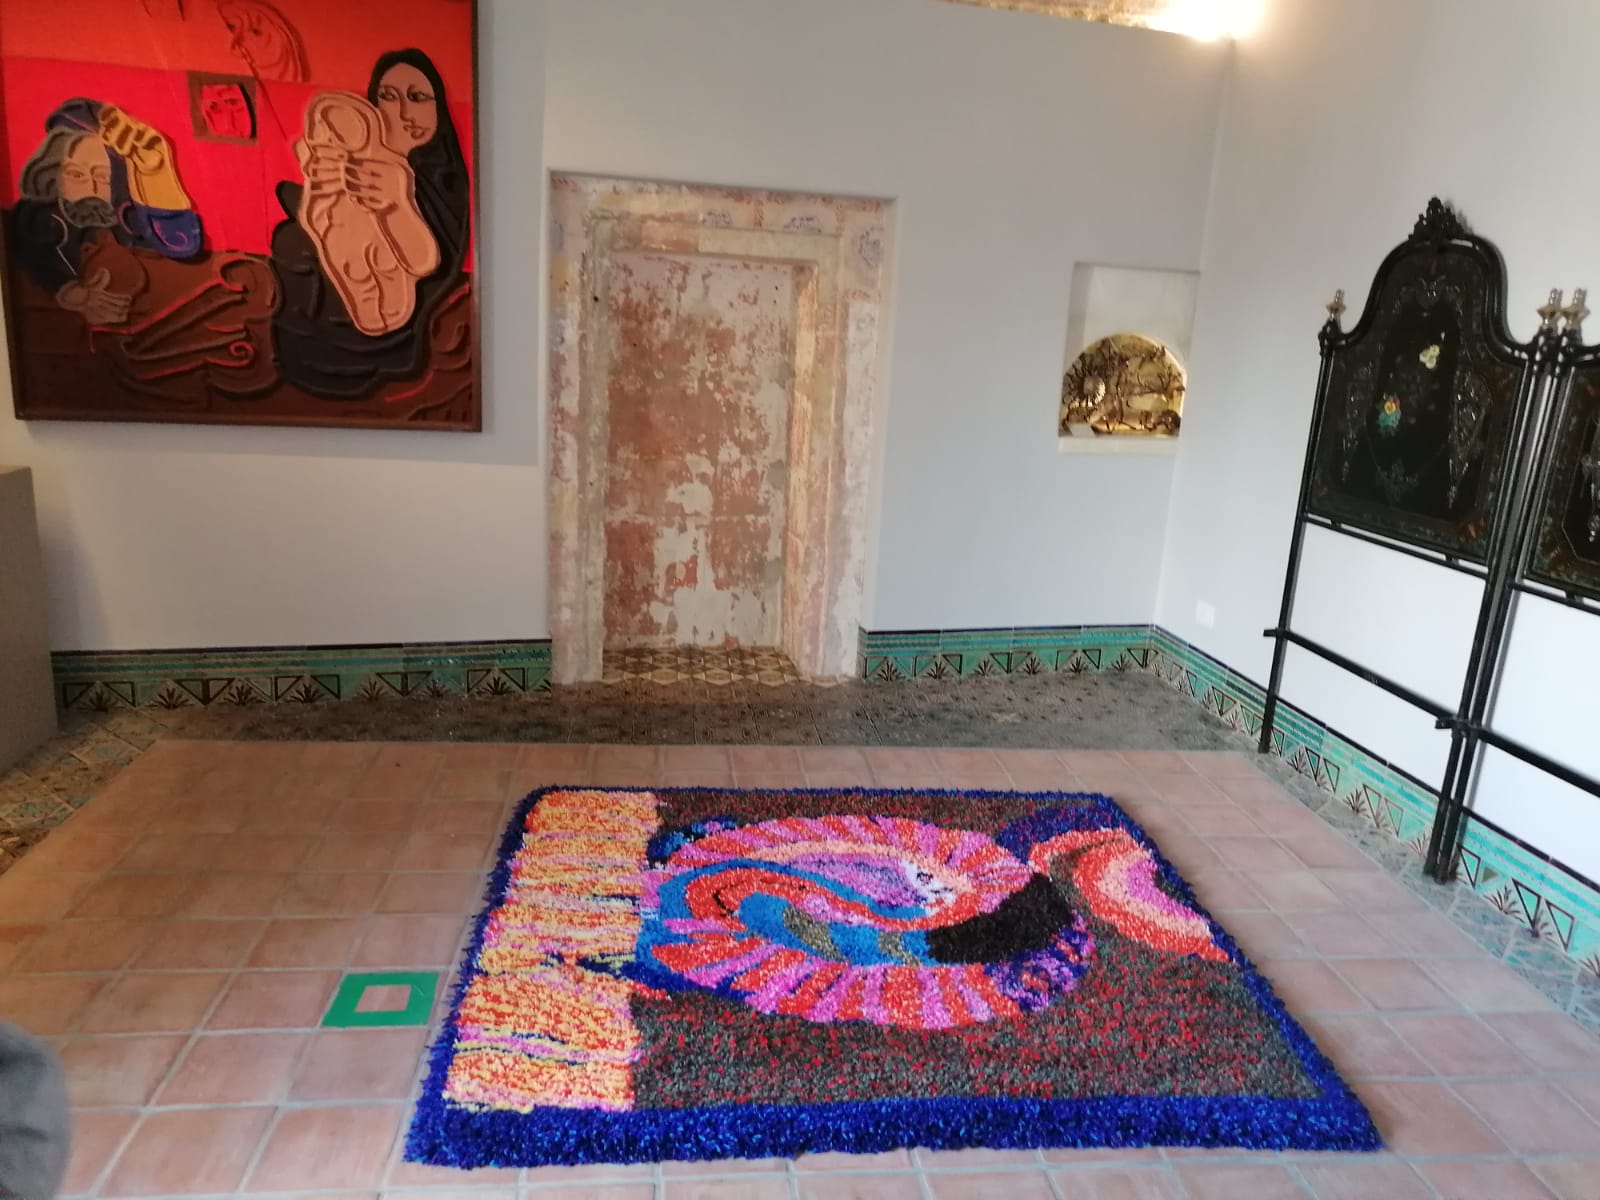 Il tappeto "Sete" realizzato da Marianna D'Aquino ed esposto all'interno della Casa Museo di Ortega